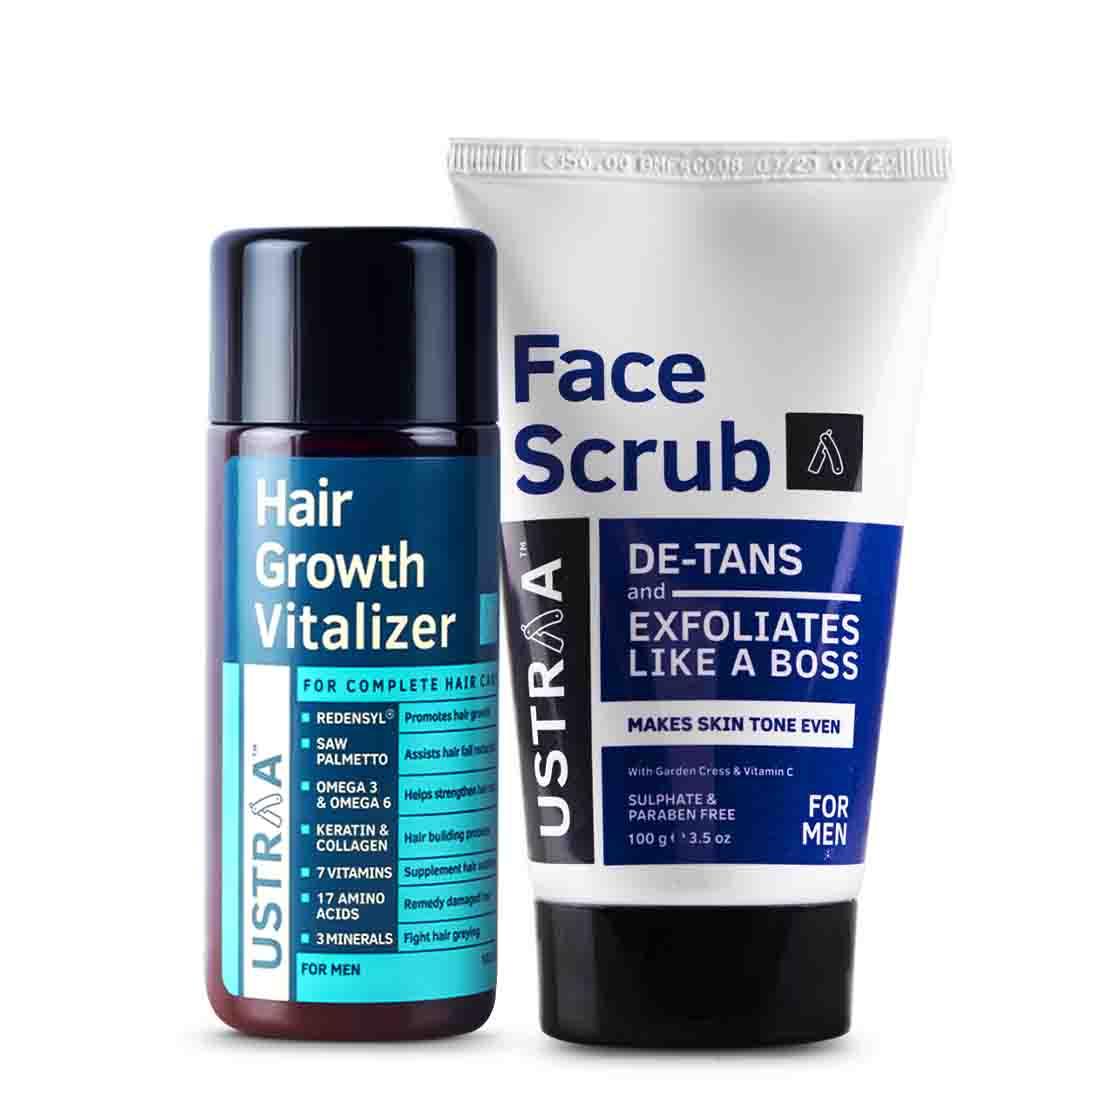 Hair Growth Vitalizer & Face Scrub De- Tan